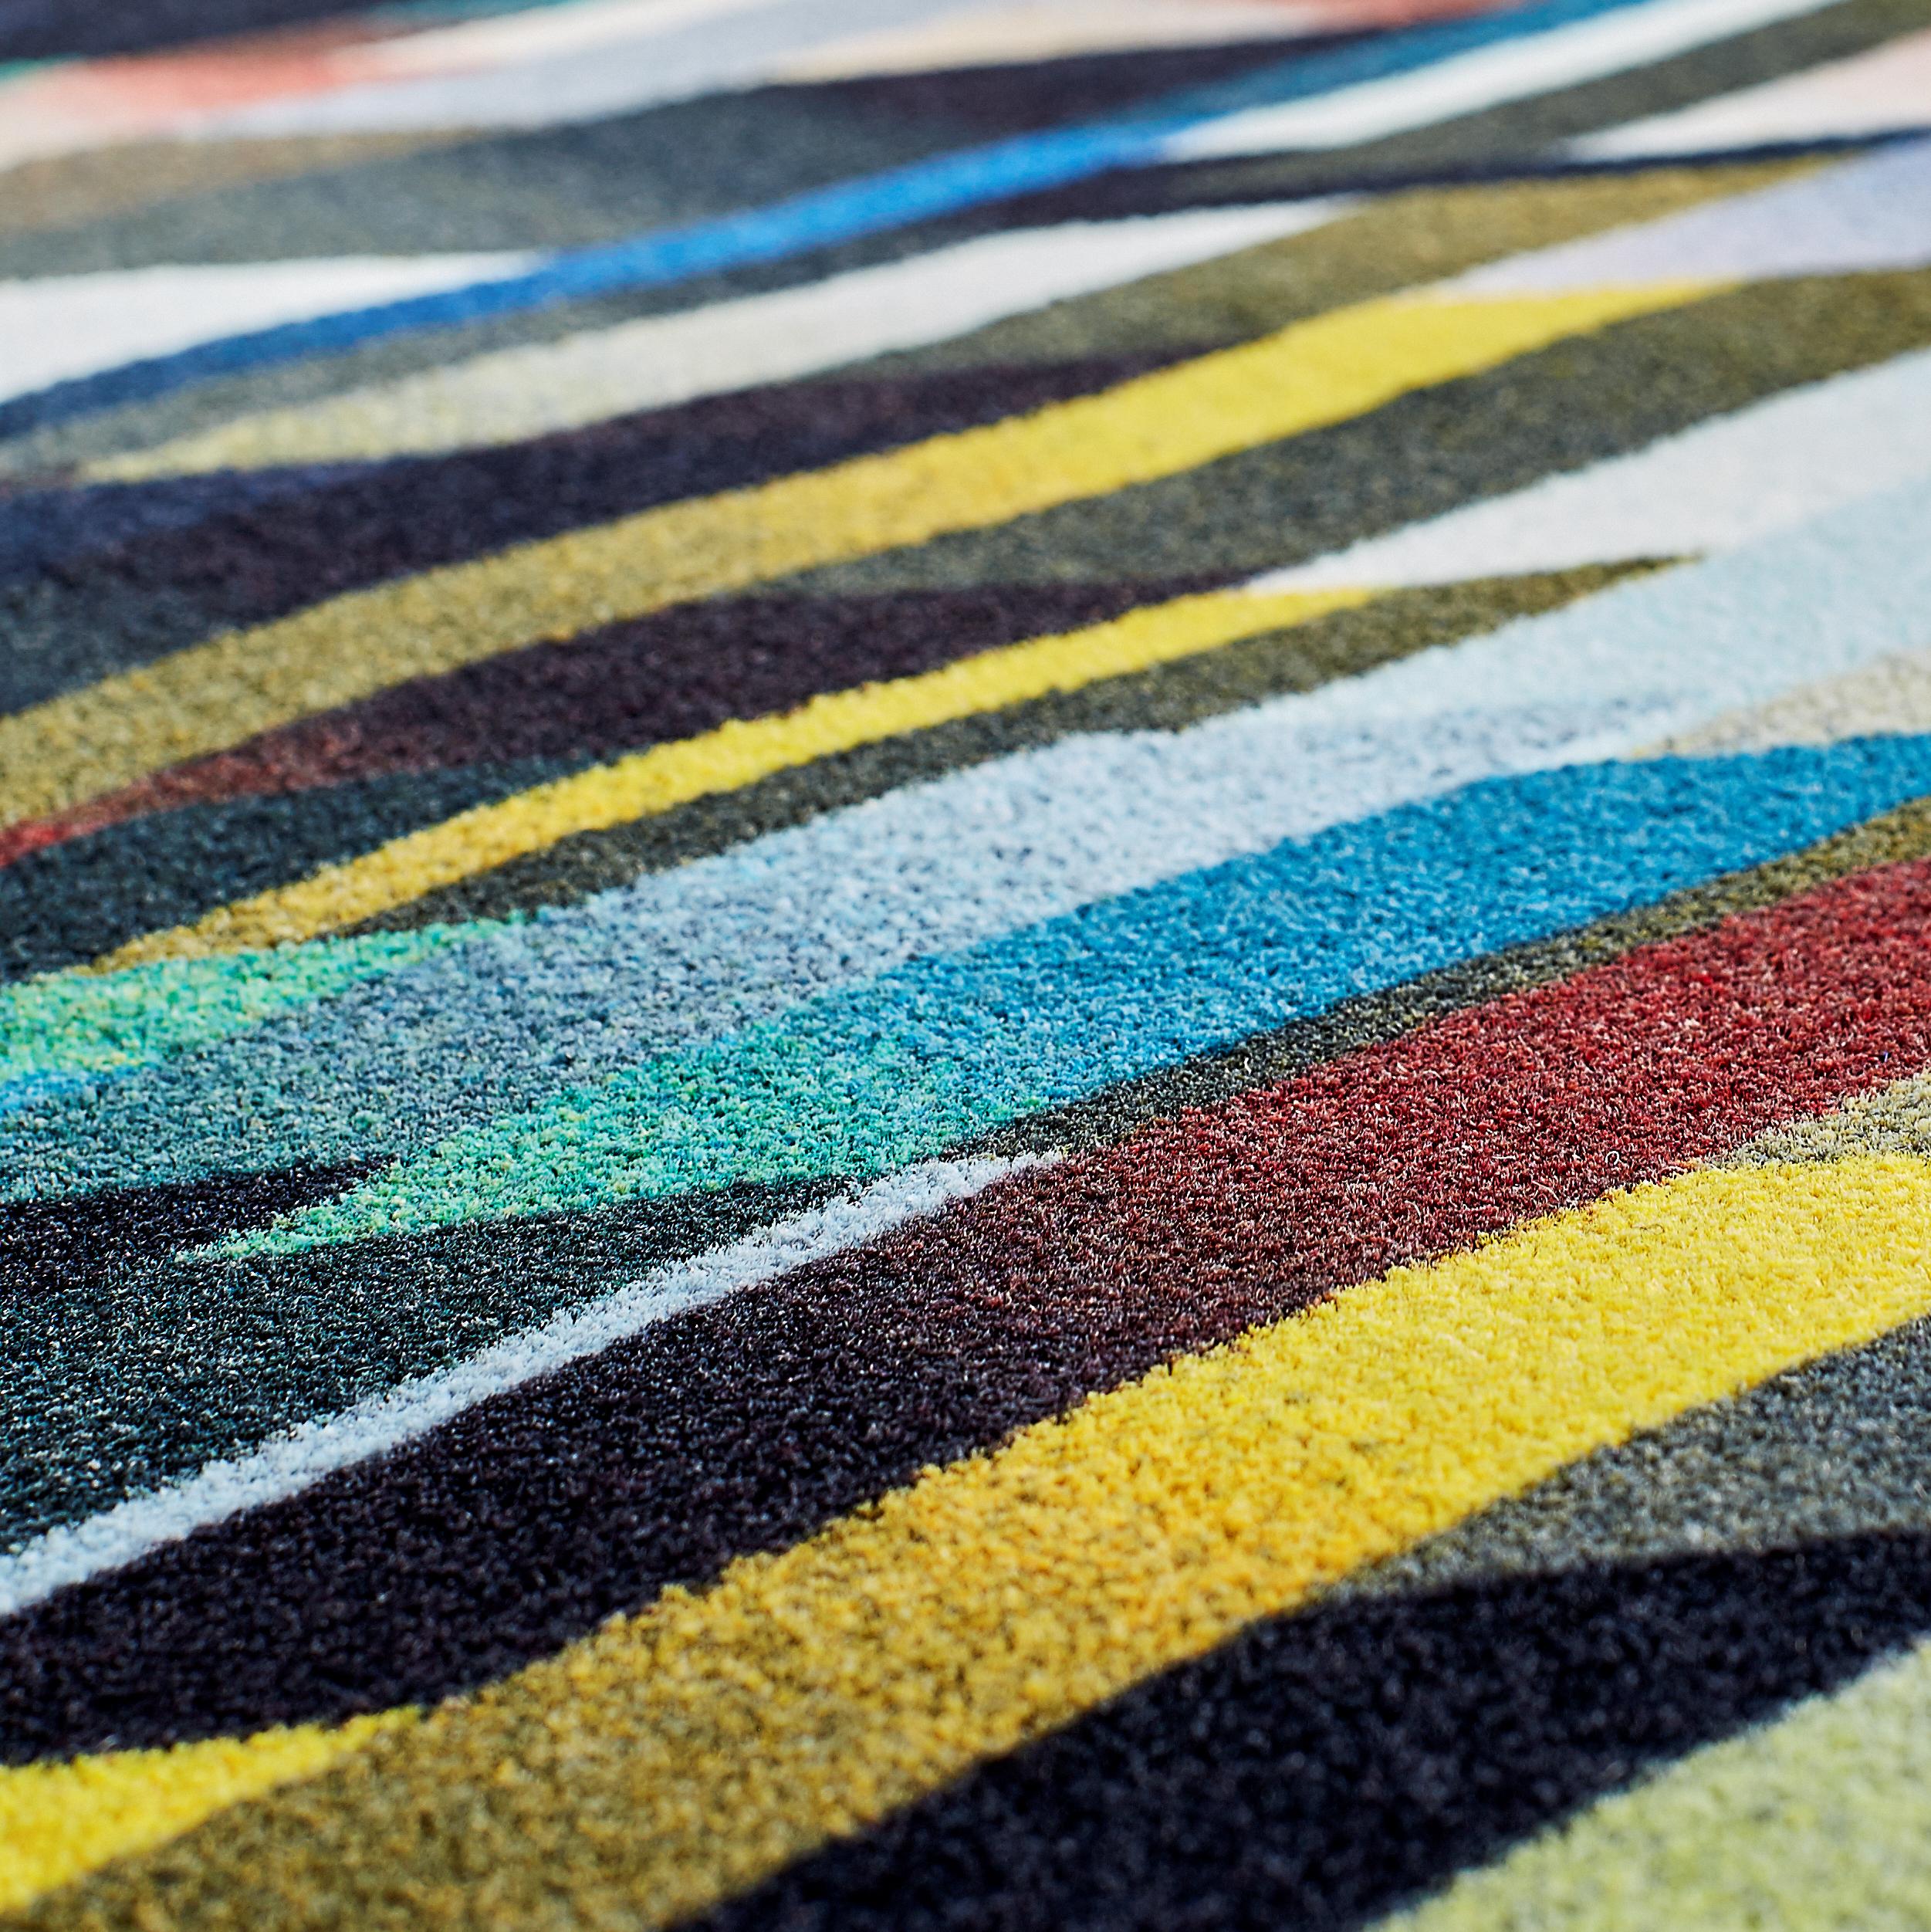 Moooi Small Diagonal Gradient Dark Teppich aus niedrigflorigem Polyamid von Kit Miles

Kit Miles ist das gleichnamige Studio für luxuriöses Oberflächendesign, das 2011 von der britischen Textildesignerin Kit Miles gegründet wurde. Bekannt für den